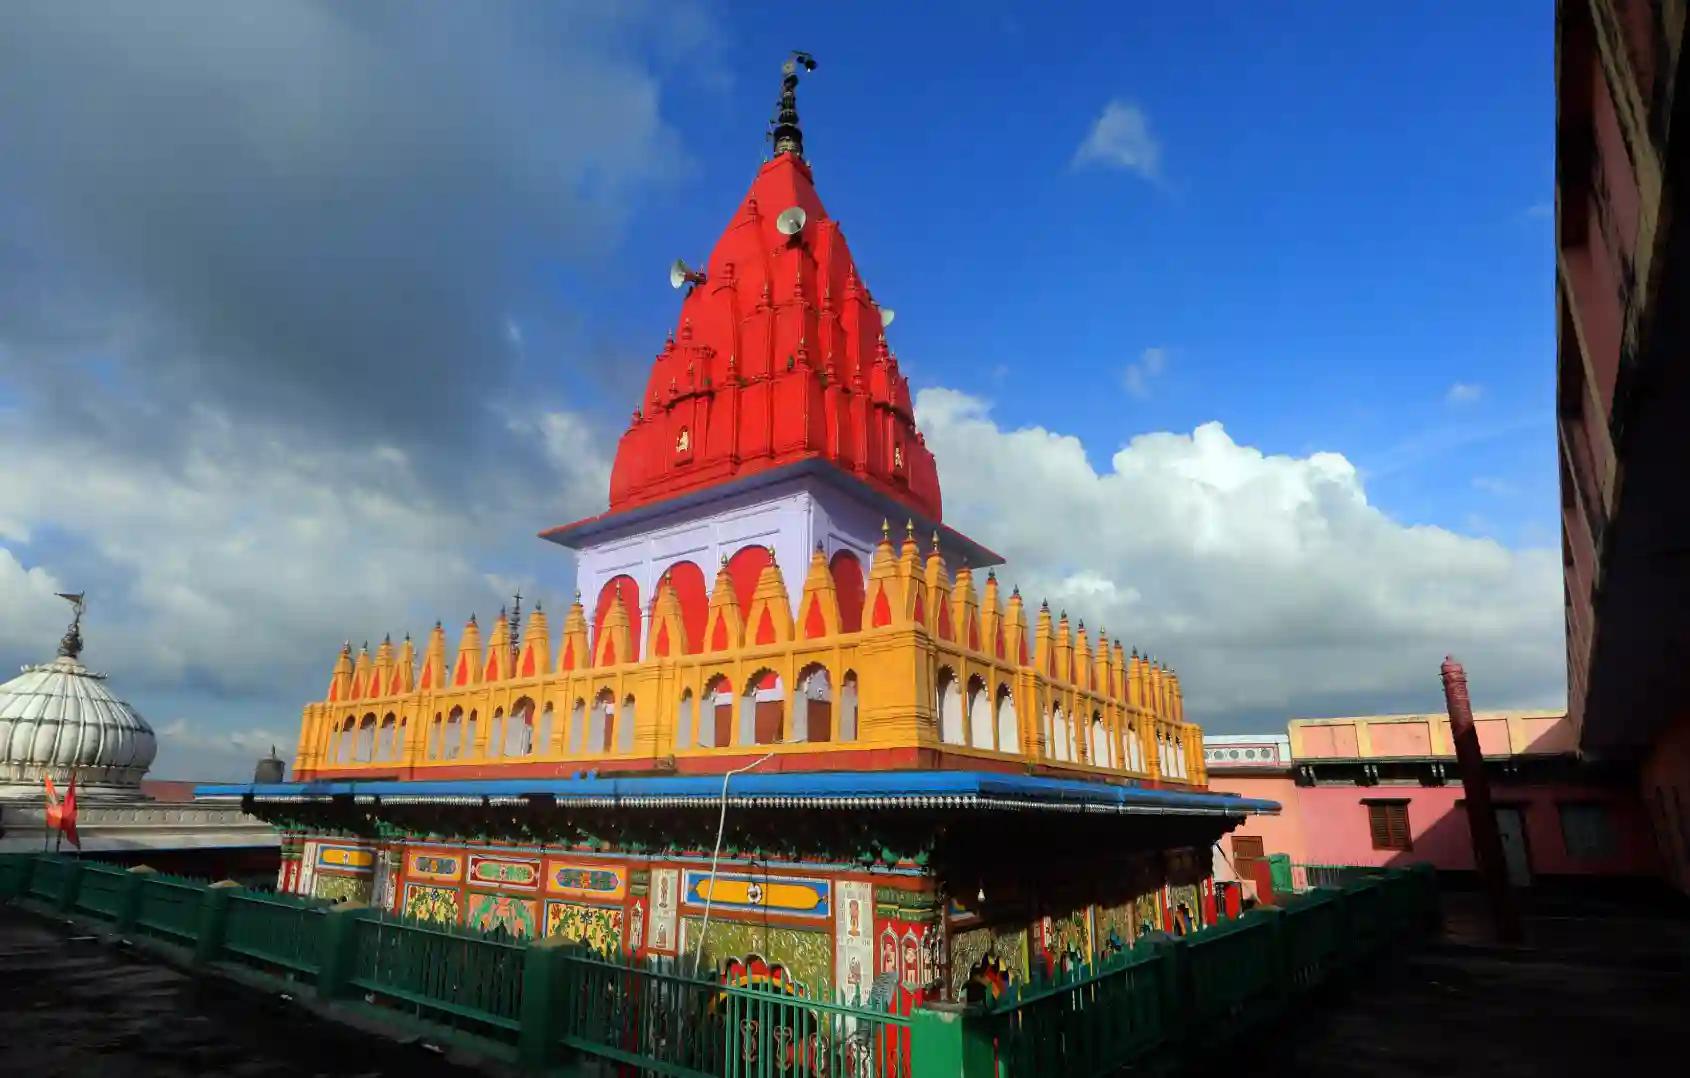 श्री हनुमान गढ़ी मंदिर,अयोध्या, उत्तर प्रदेश